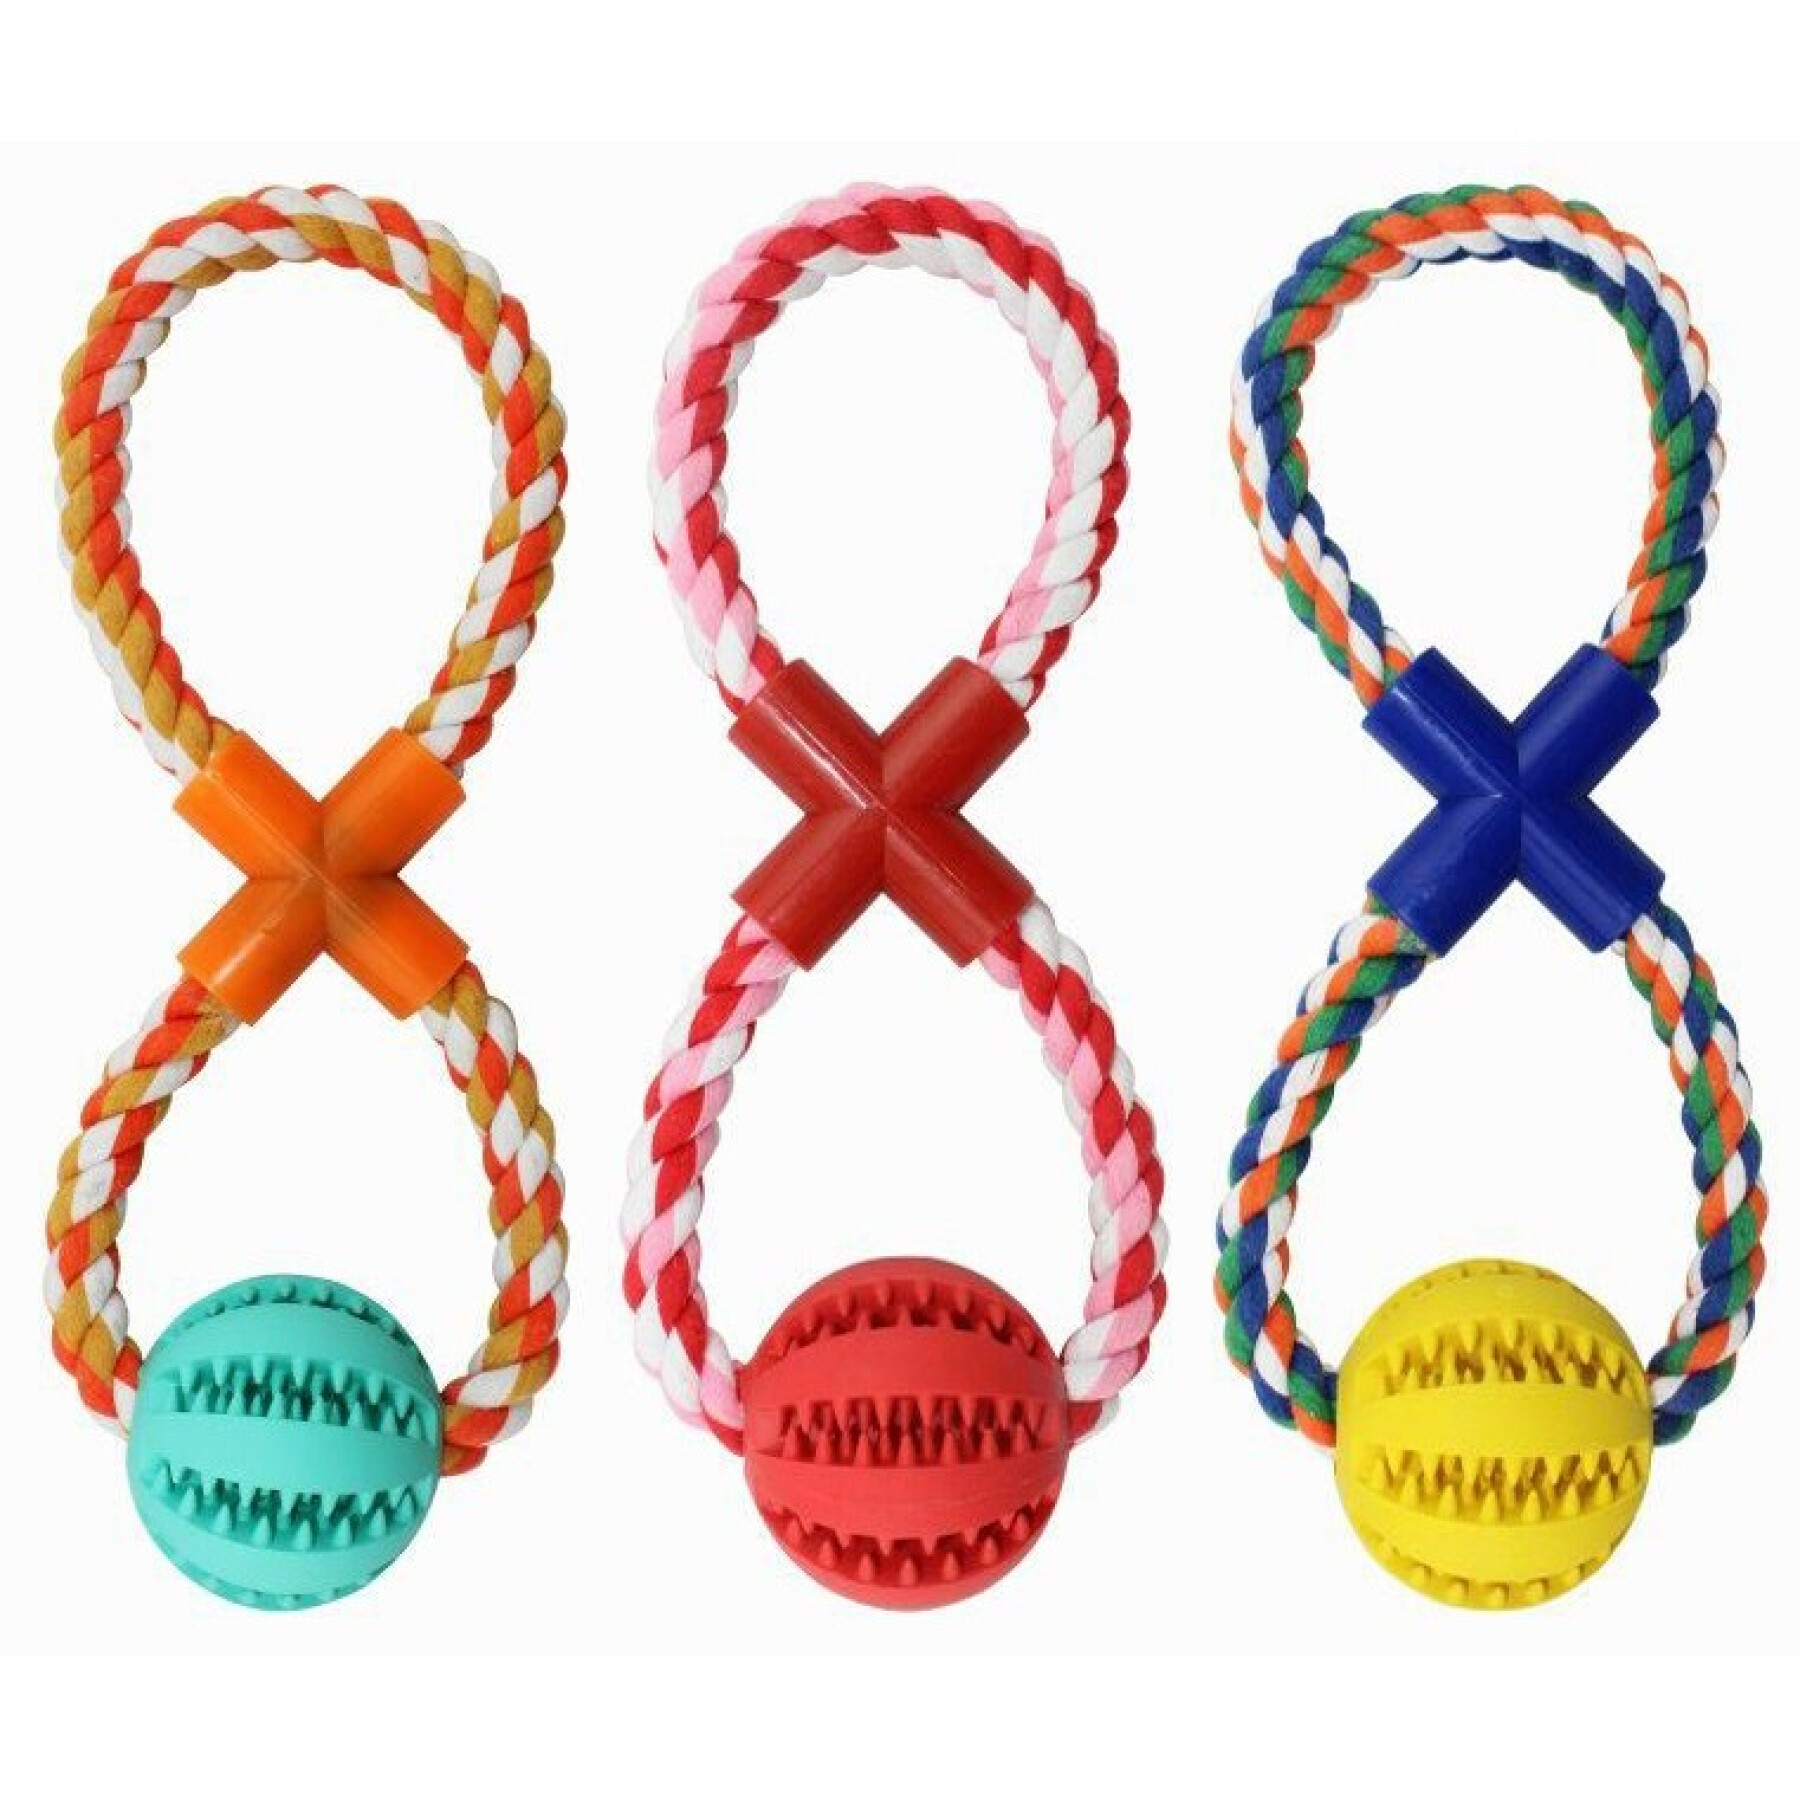 Jouet pour chien baseball dentaire avec corde en coton en forme de 8 BUBU Pets